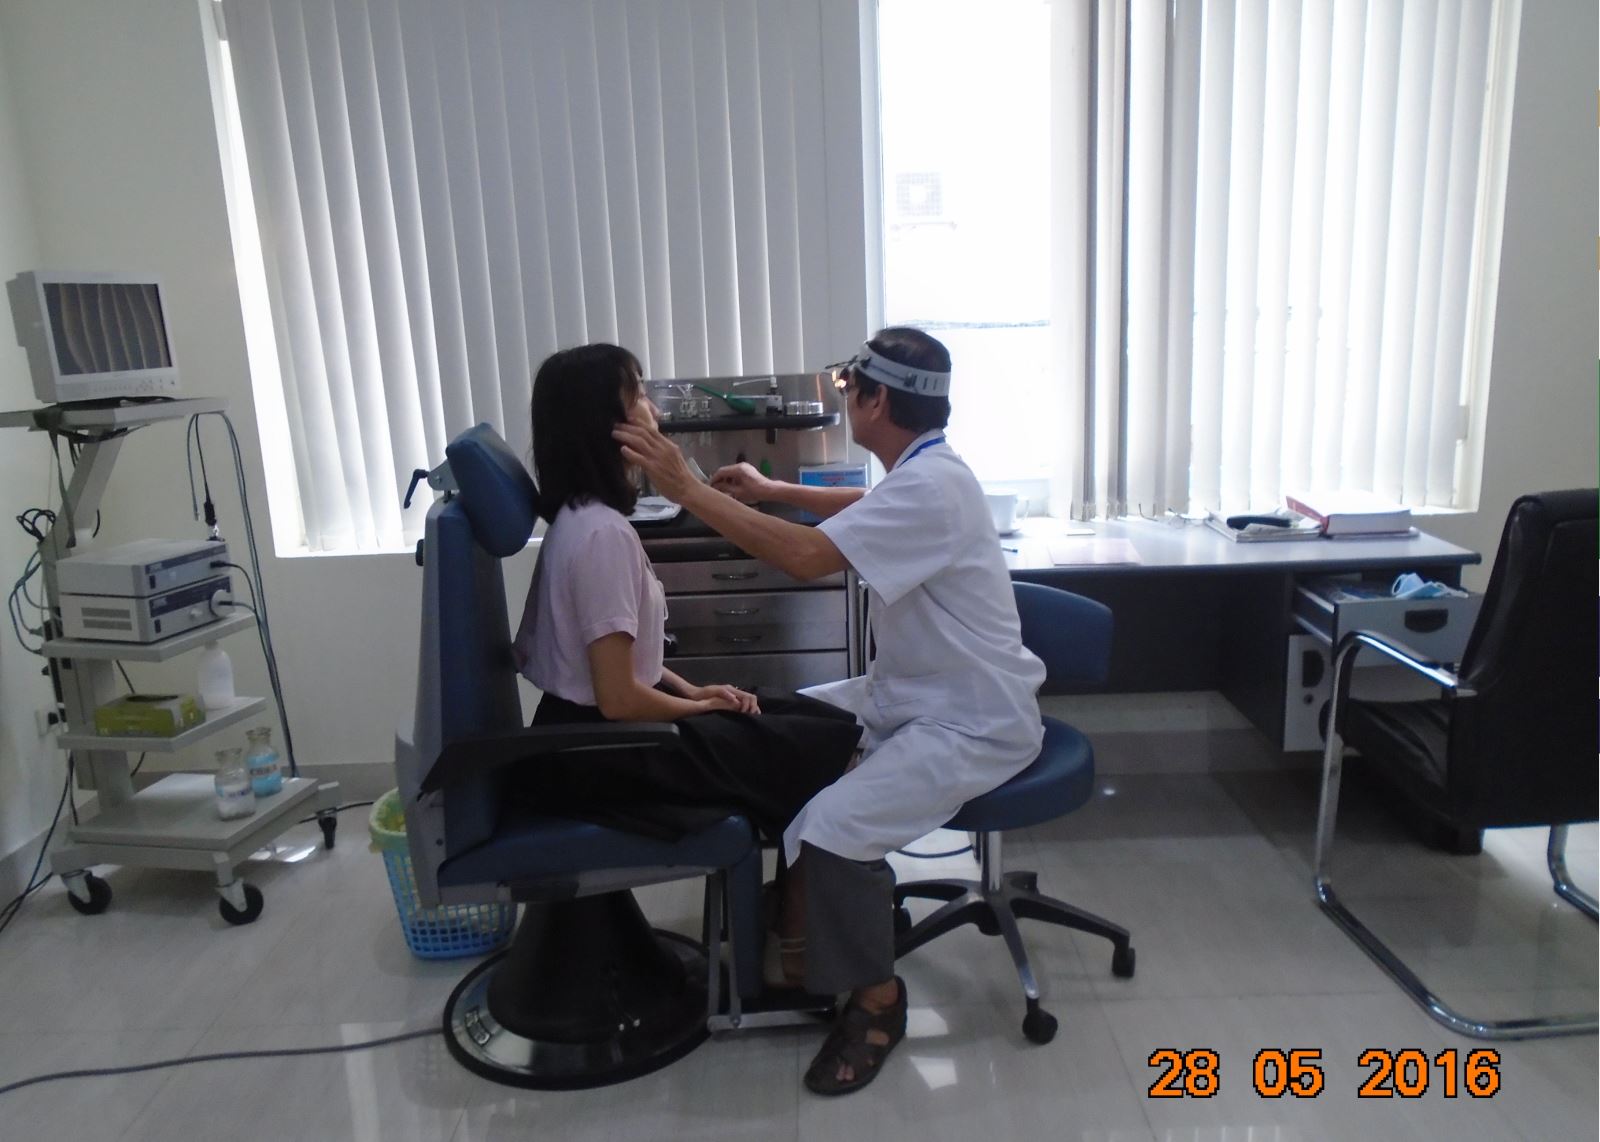 Khám tai mũi họng trong gói khám sức khỏe tổng quát tại Bệnh viện đa khoa Bảo sơn 2